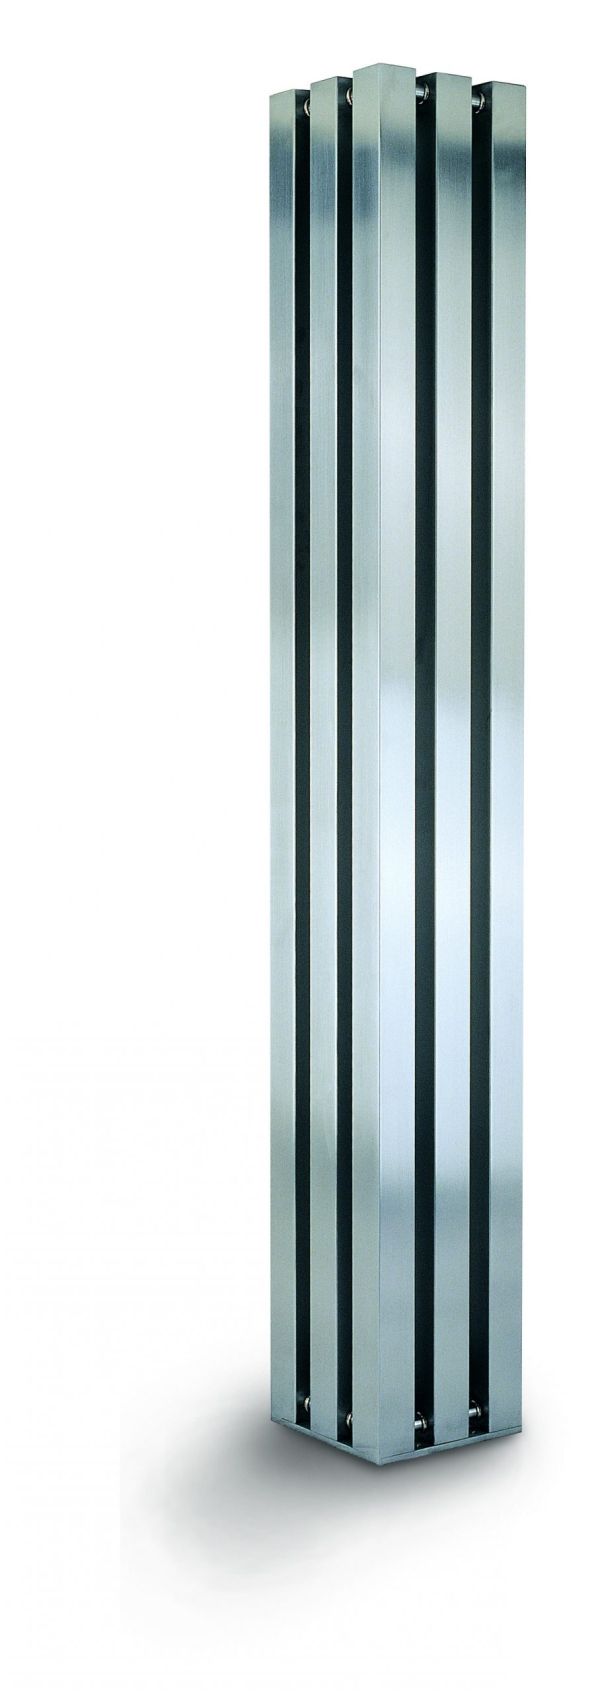 Edelstahl design heizkörper vertikal vitan küche wohnzimmer wohnraum heizung